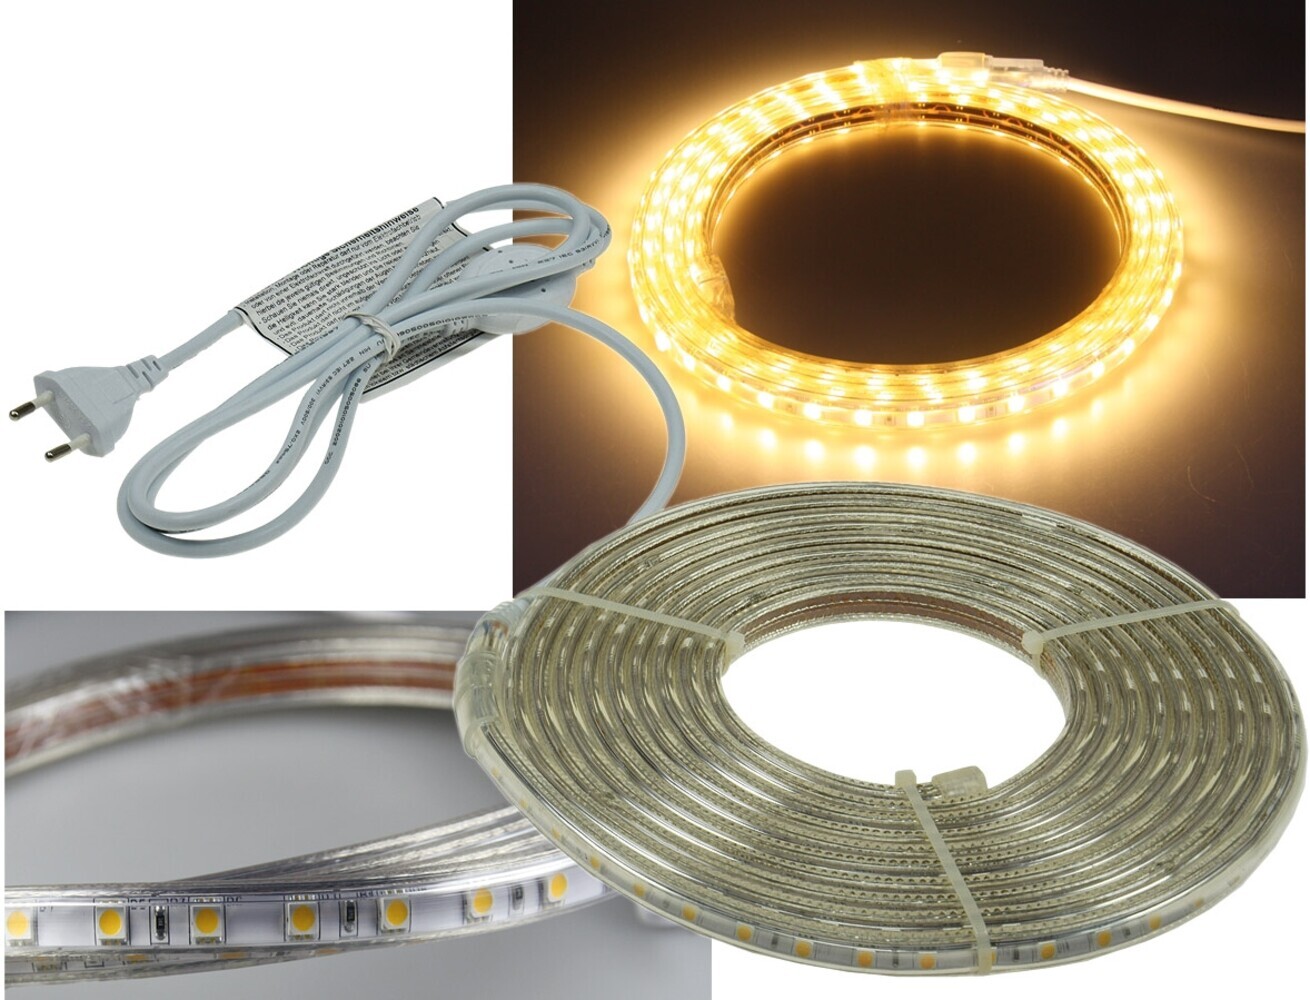 Hochwertiger LED Streifen der Marke ChiliTec, strahlt ein warmweißes und ultra helles Licht aus